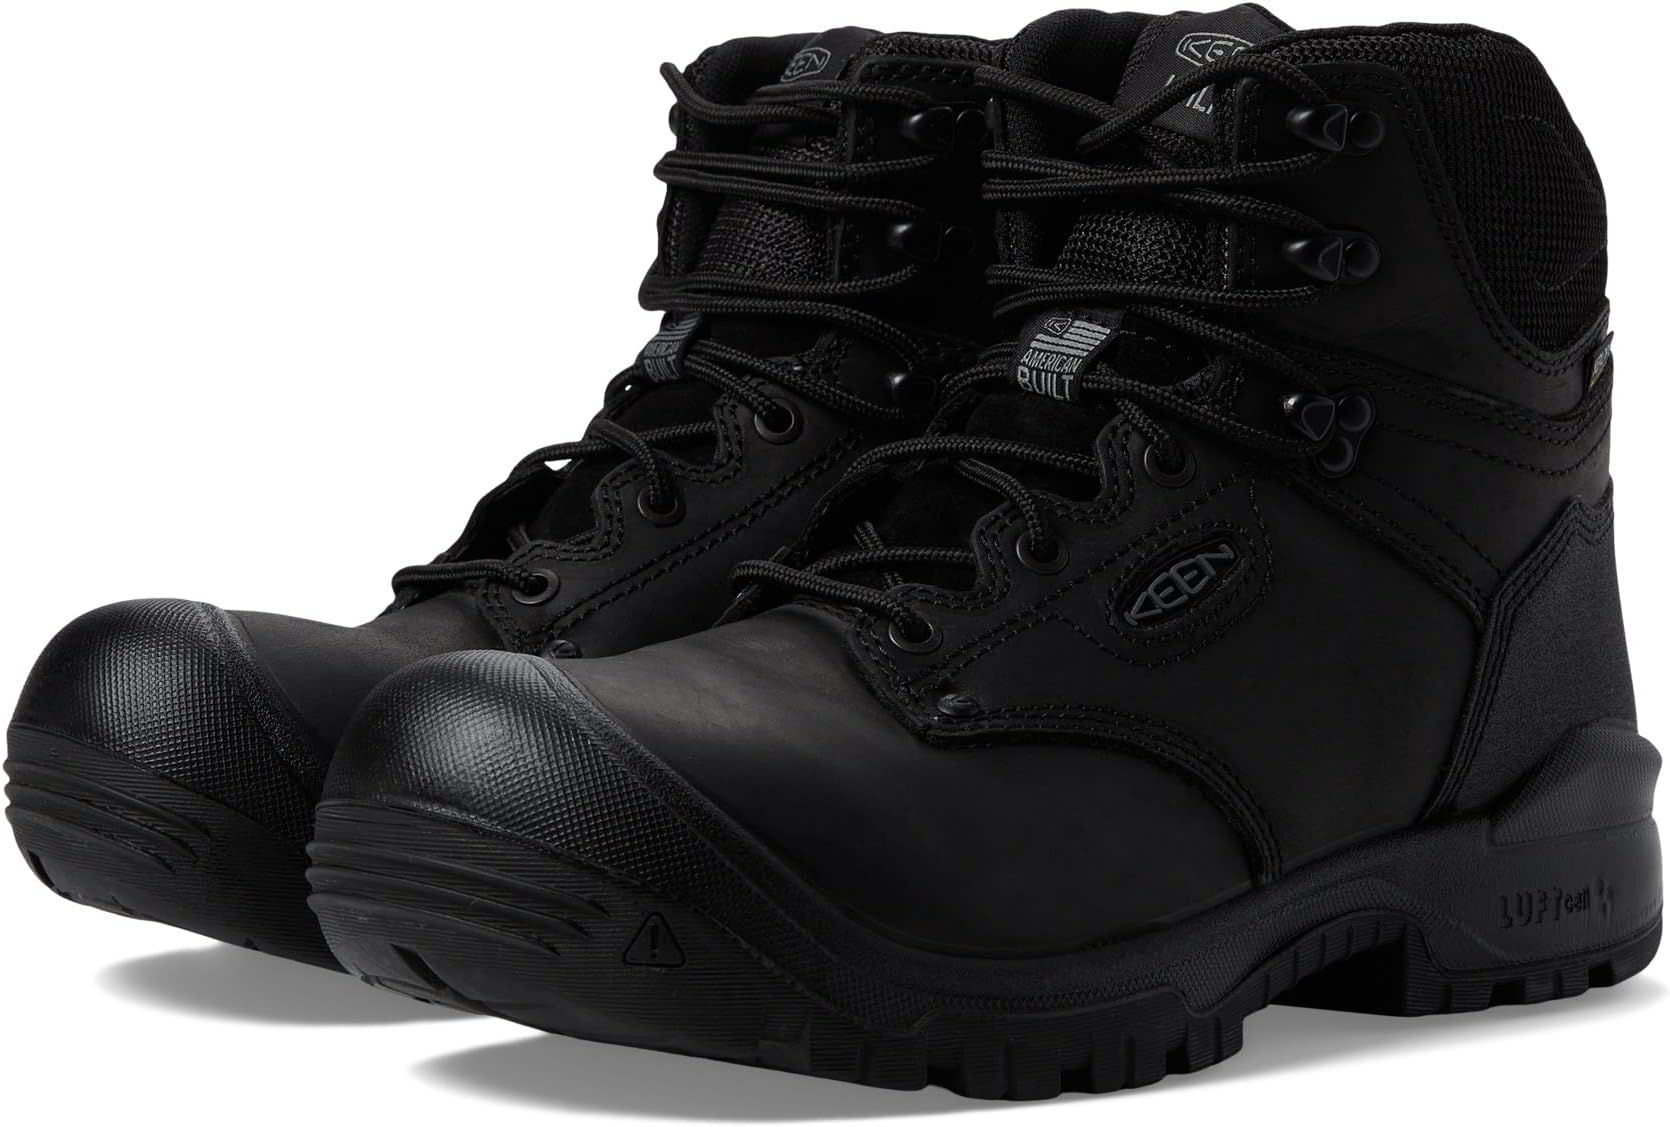 Рабочая обувь с мягким носком 6 Independence WP Soft Toe KEEN Utility, цвет Black/Black